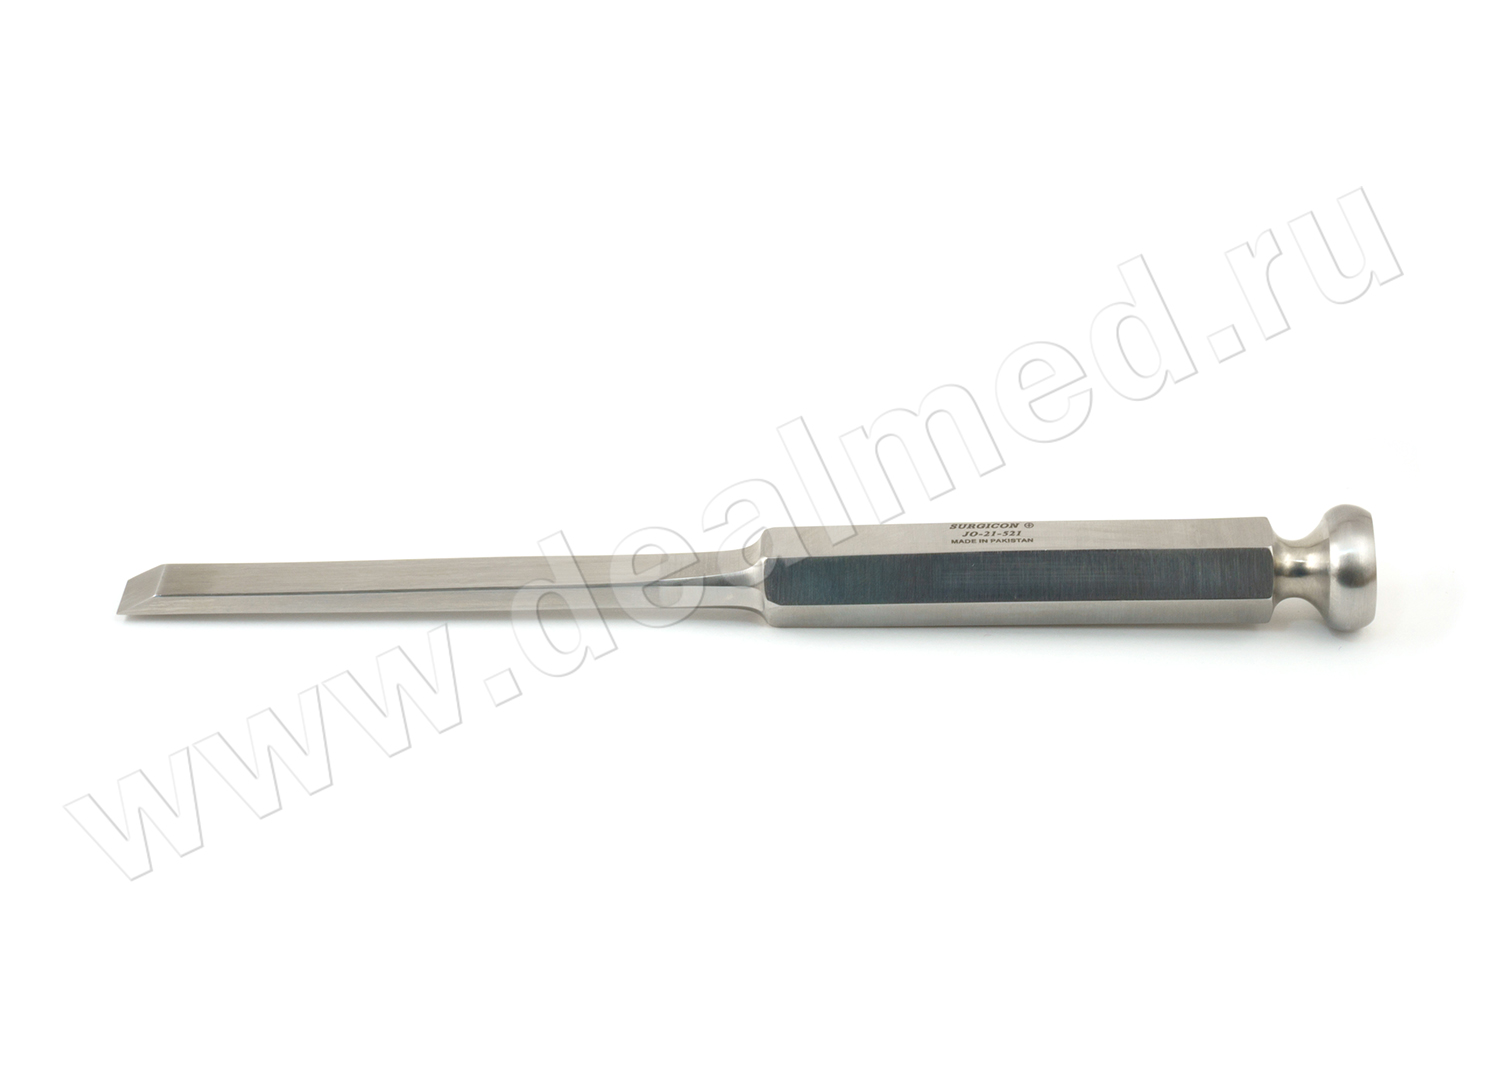 Долото с шестигранной ручкой плоское с односторонней заточкой 10 мм JO-21-521 Surgicon, Пакистан